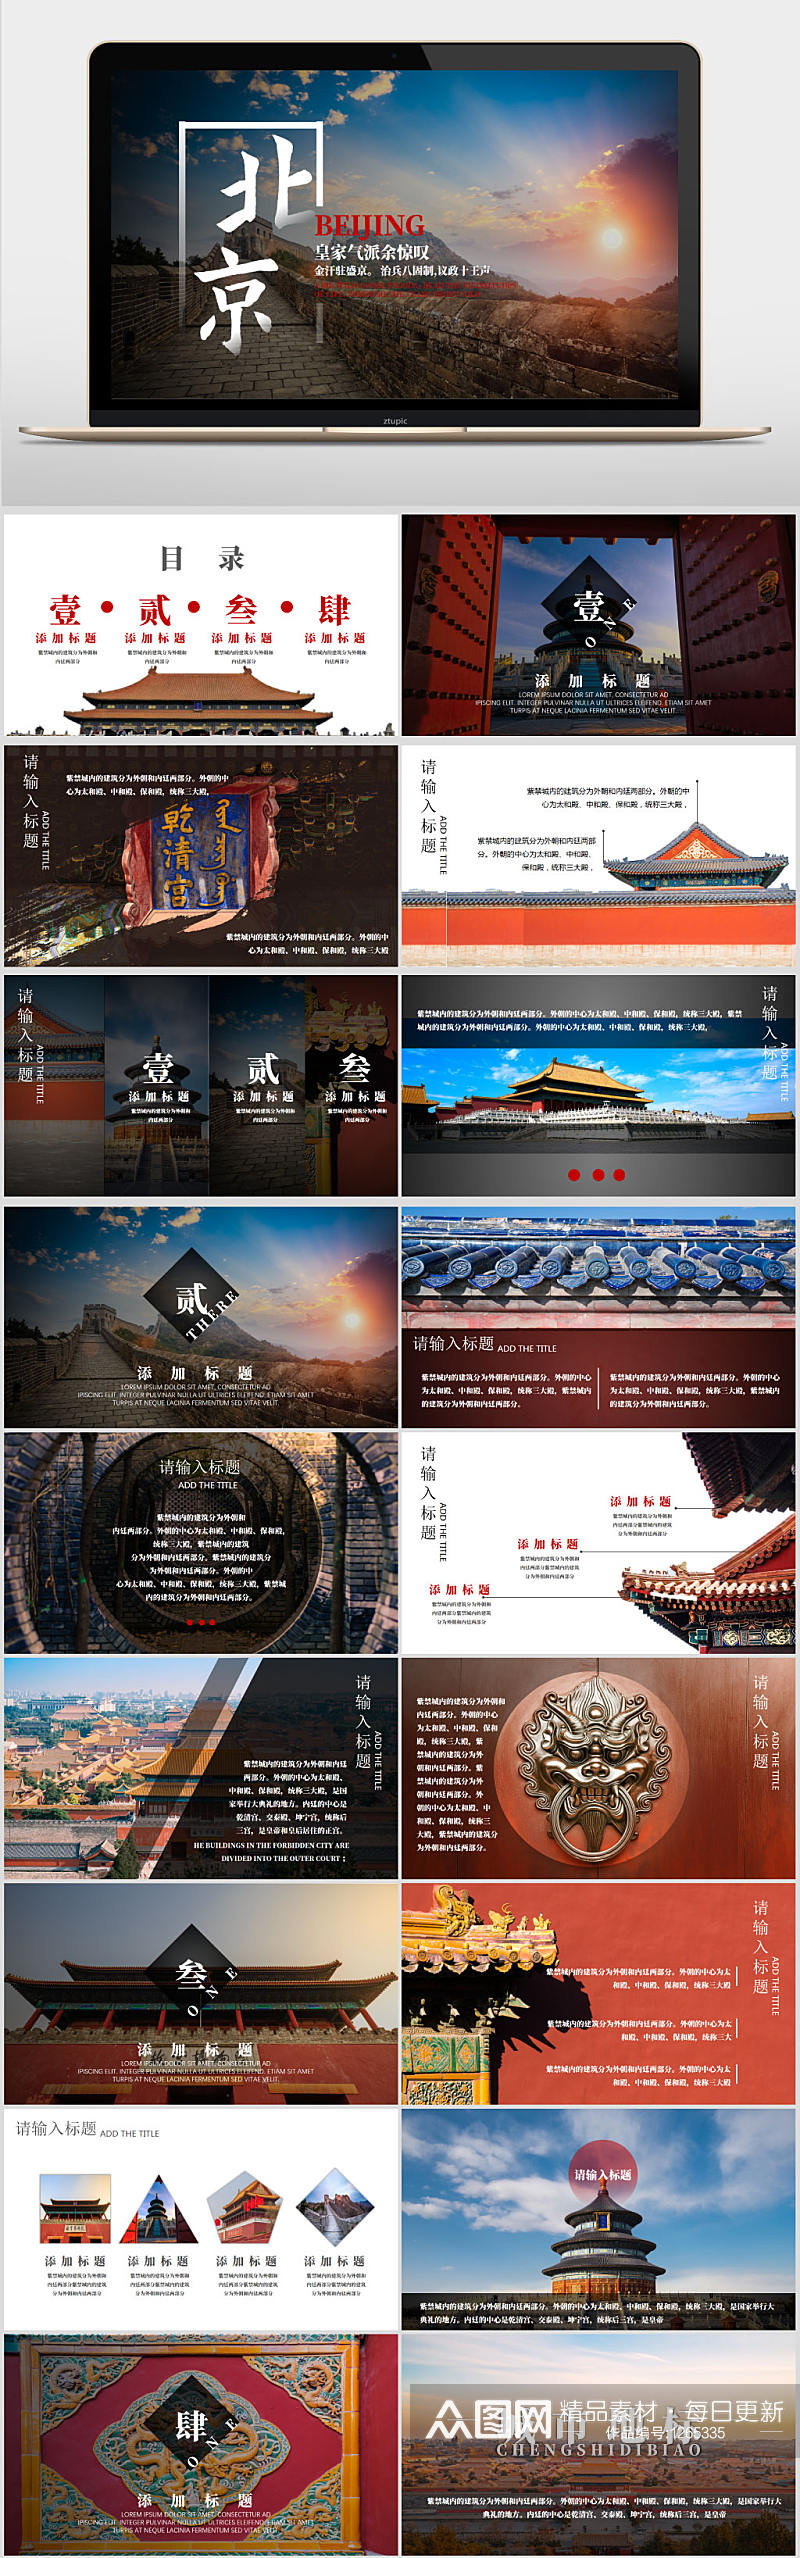 北京旅游城市介绍PPT模板素材